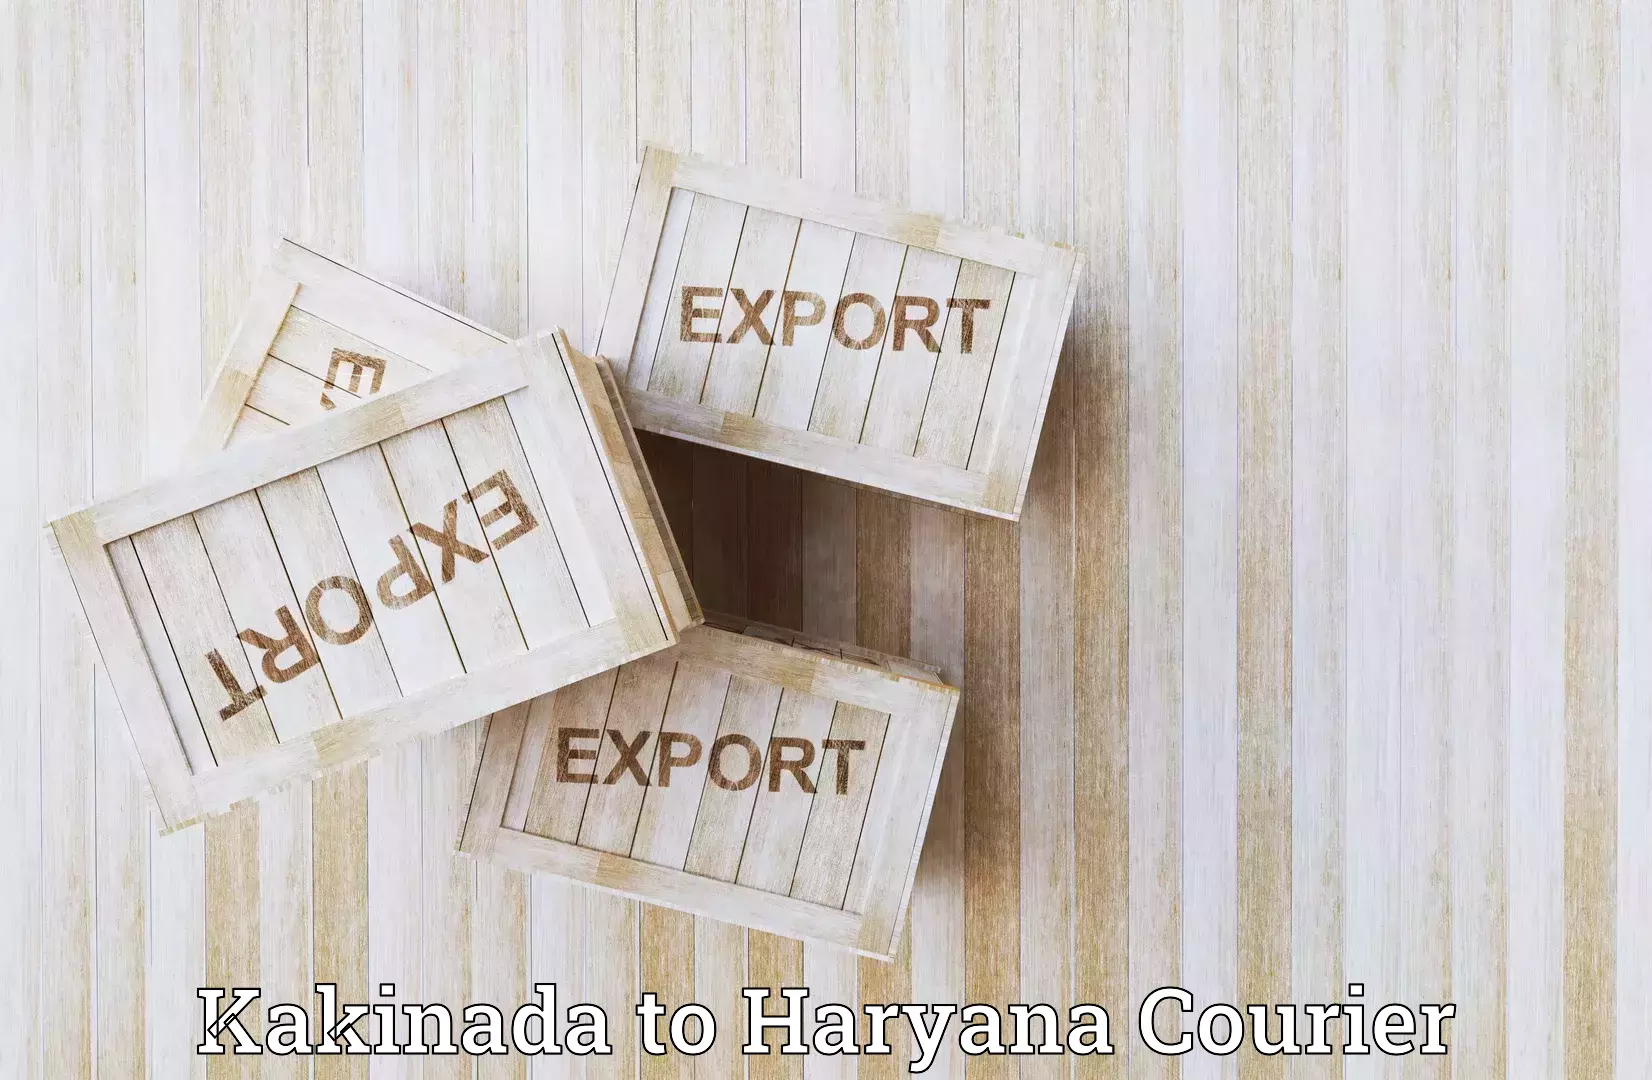 Heavy parcel delivery Kakinada to Haryana